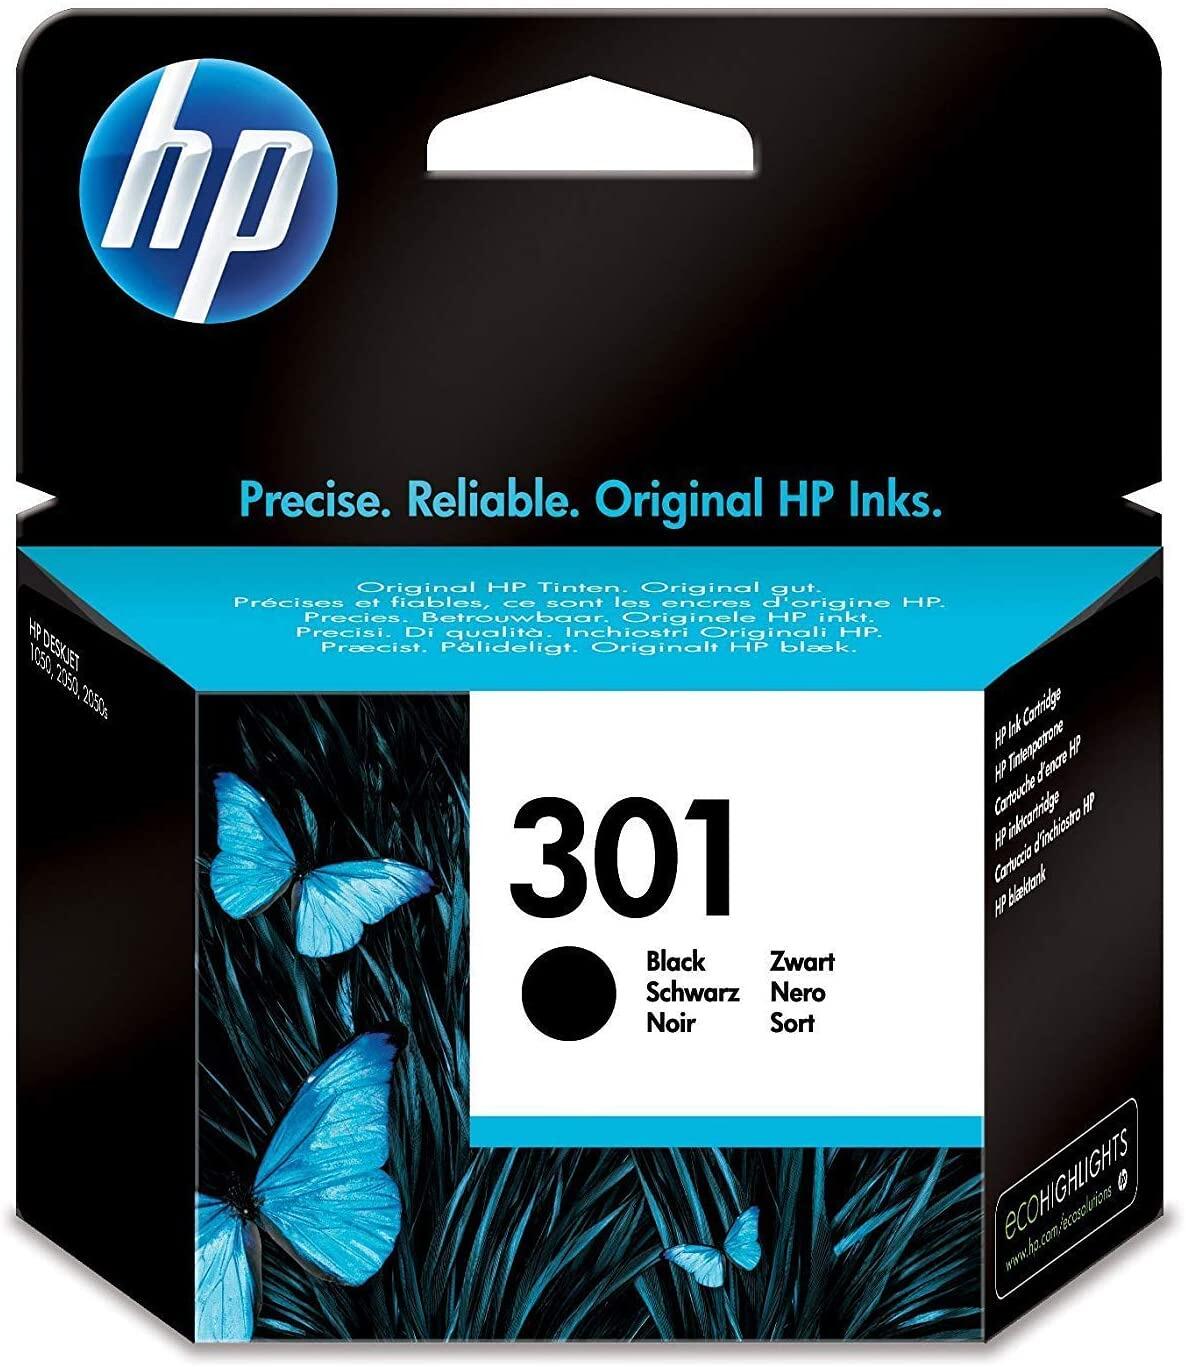 Cartouche HP 301 noir pour imprimantes jet d'encre - Cartouches jet d'encre  HP